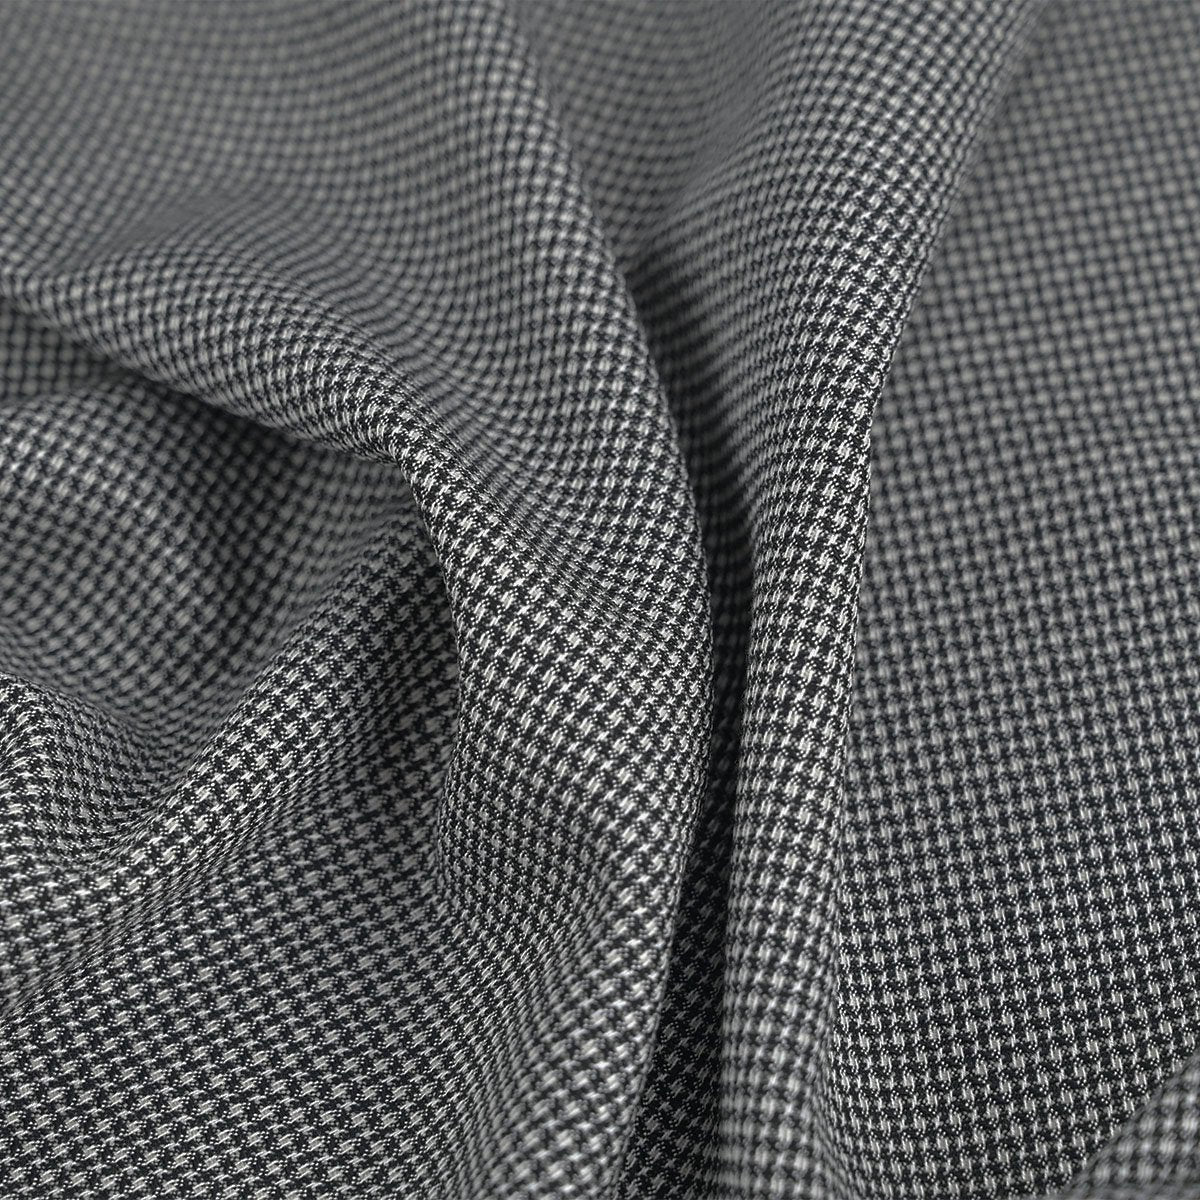 Black and White Dobby Fabric 949